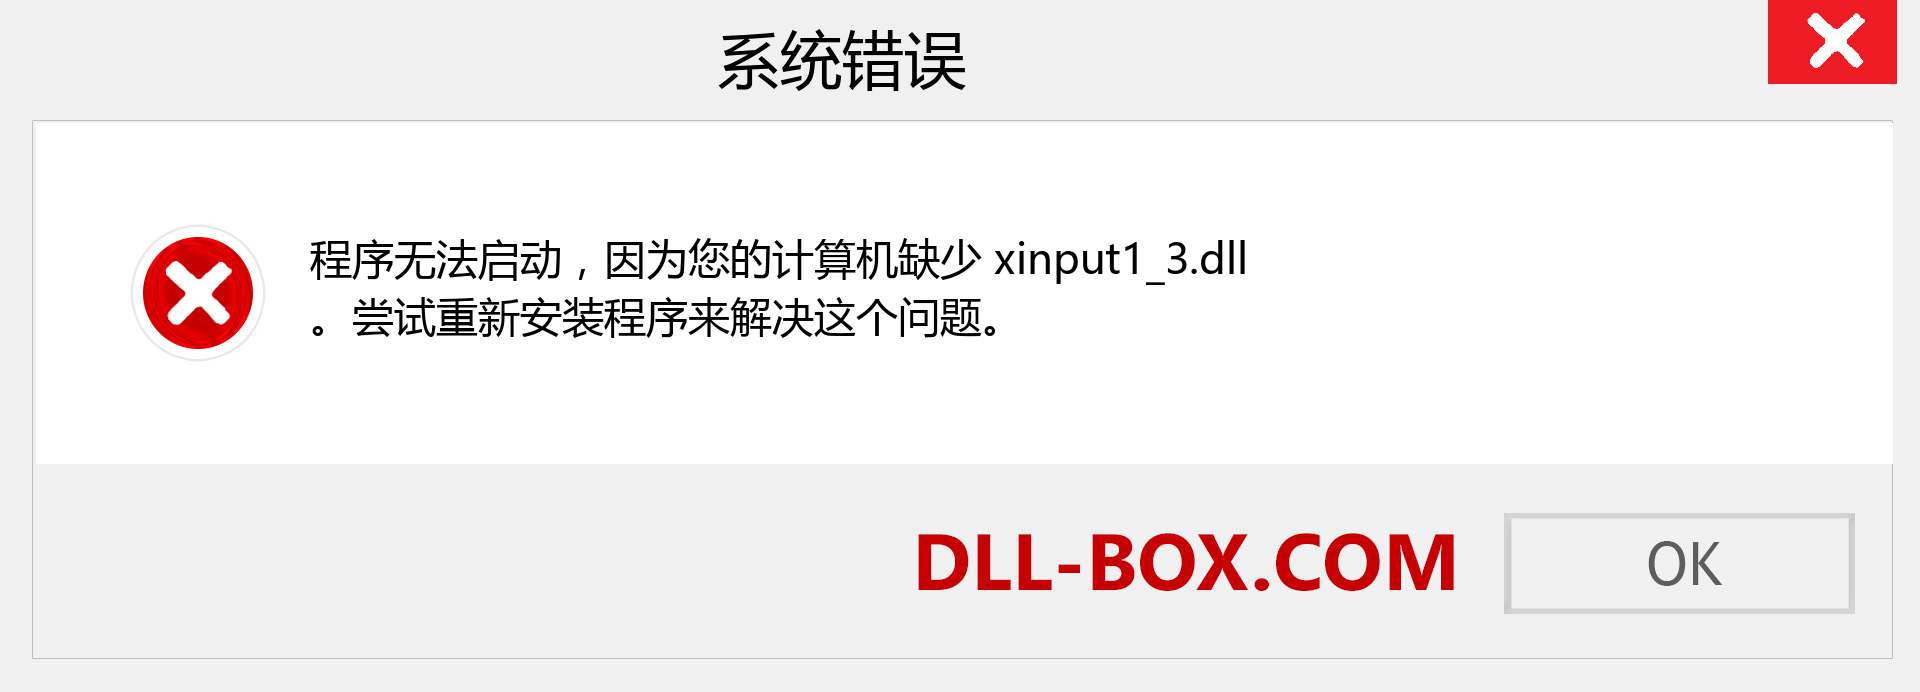 xinput1_3.dll 文件丢失？。 适用于 Windows 7、8、10 的下载 - 修复 Windows、照片、图像上的 xinput1_3 dll 丢失错误